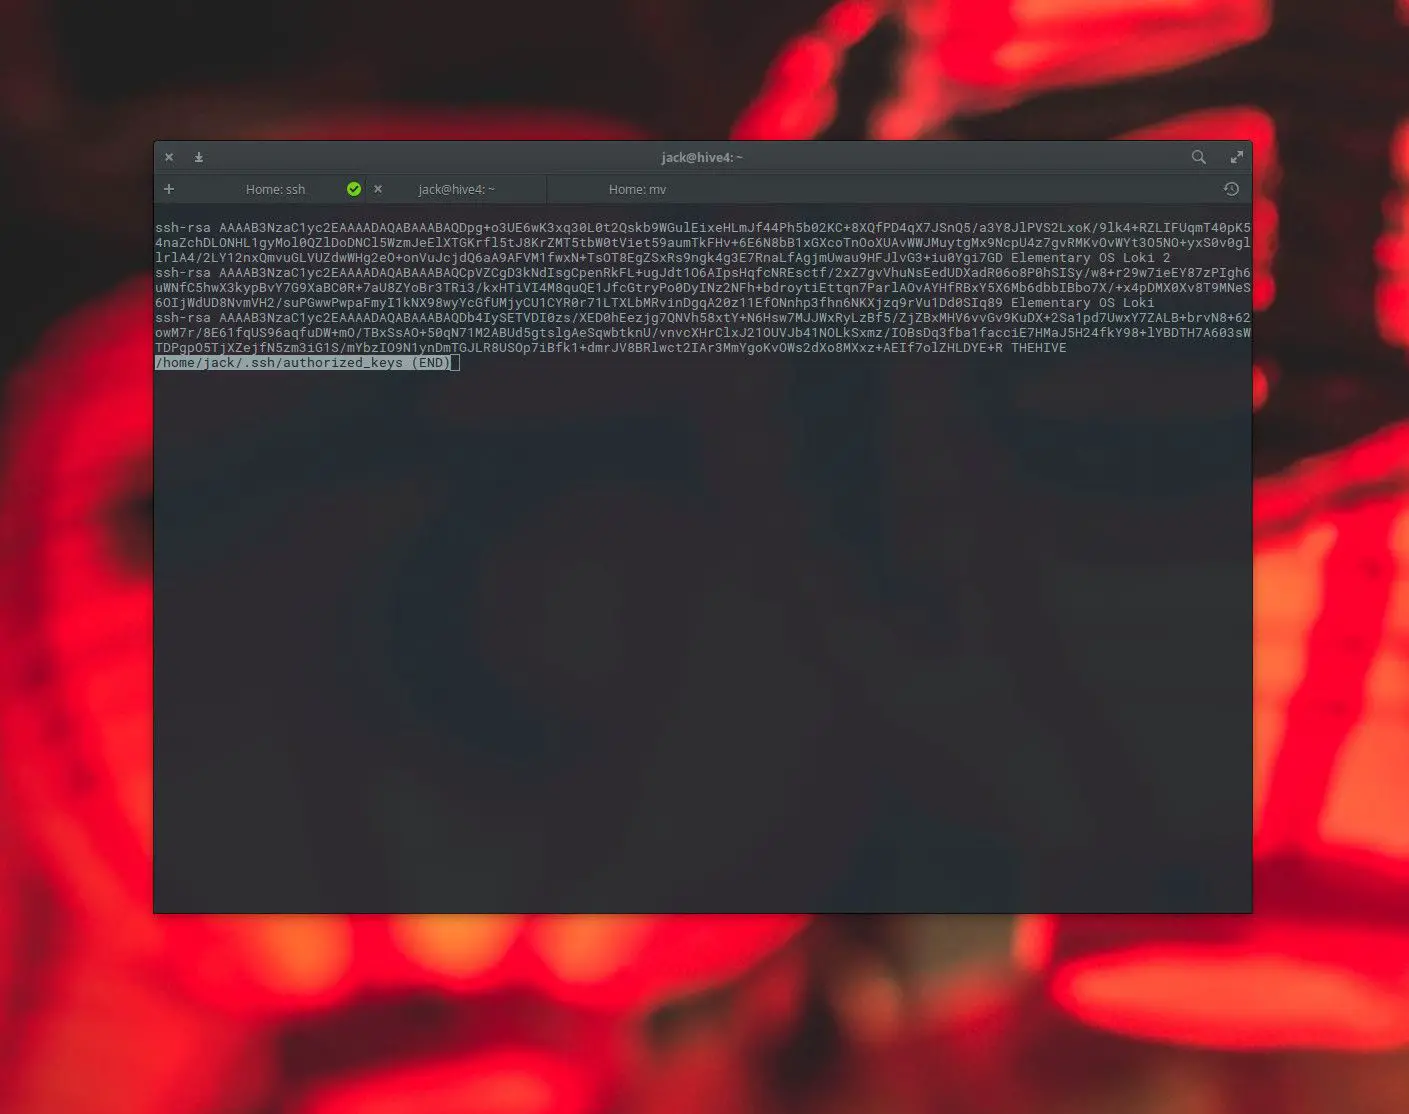 Captura de tela do arquivo authorized_keys encontrado no Linux.